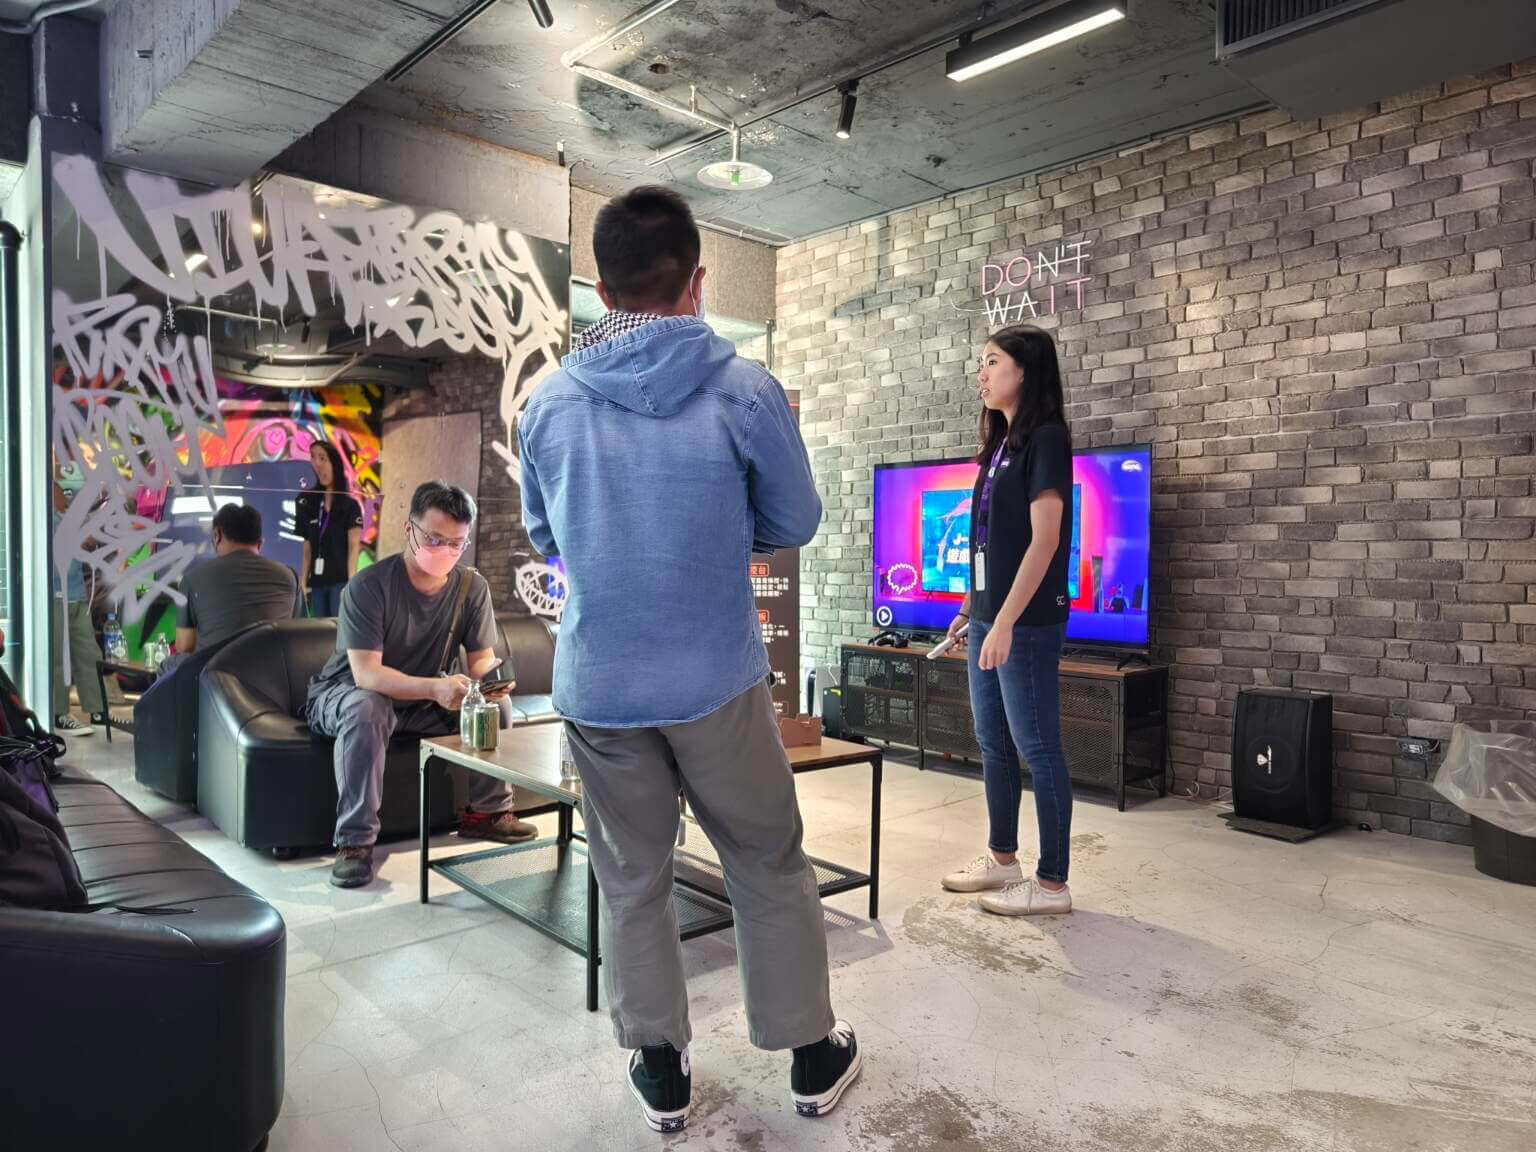 【心得】遊戲玩家的台灣品牌電視優先選擇「BenQ 量子點遊戲Google TV J-760」，玩家體驗會首發心得